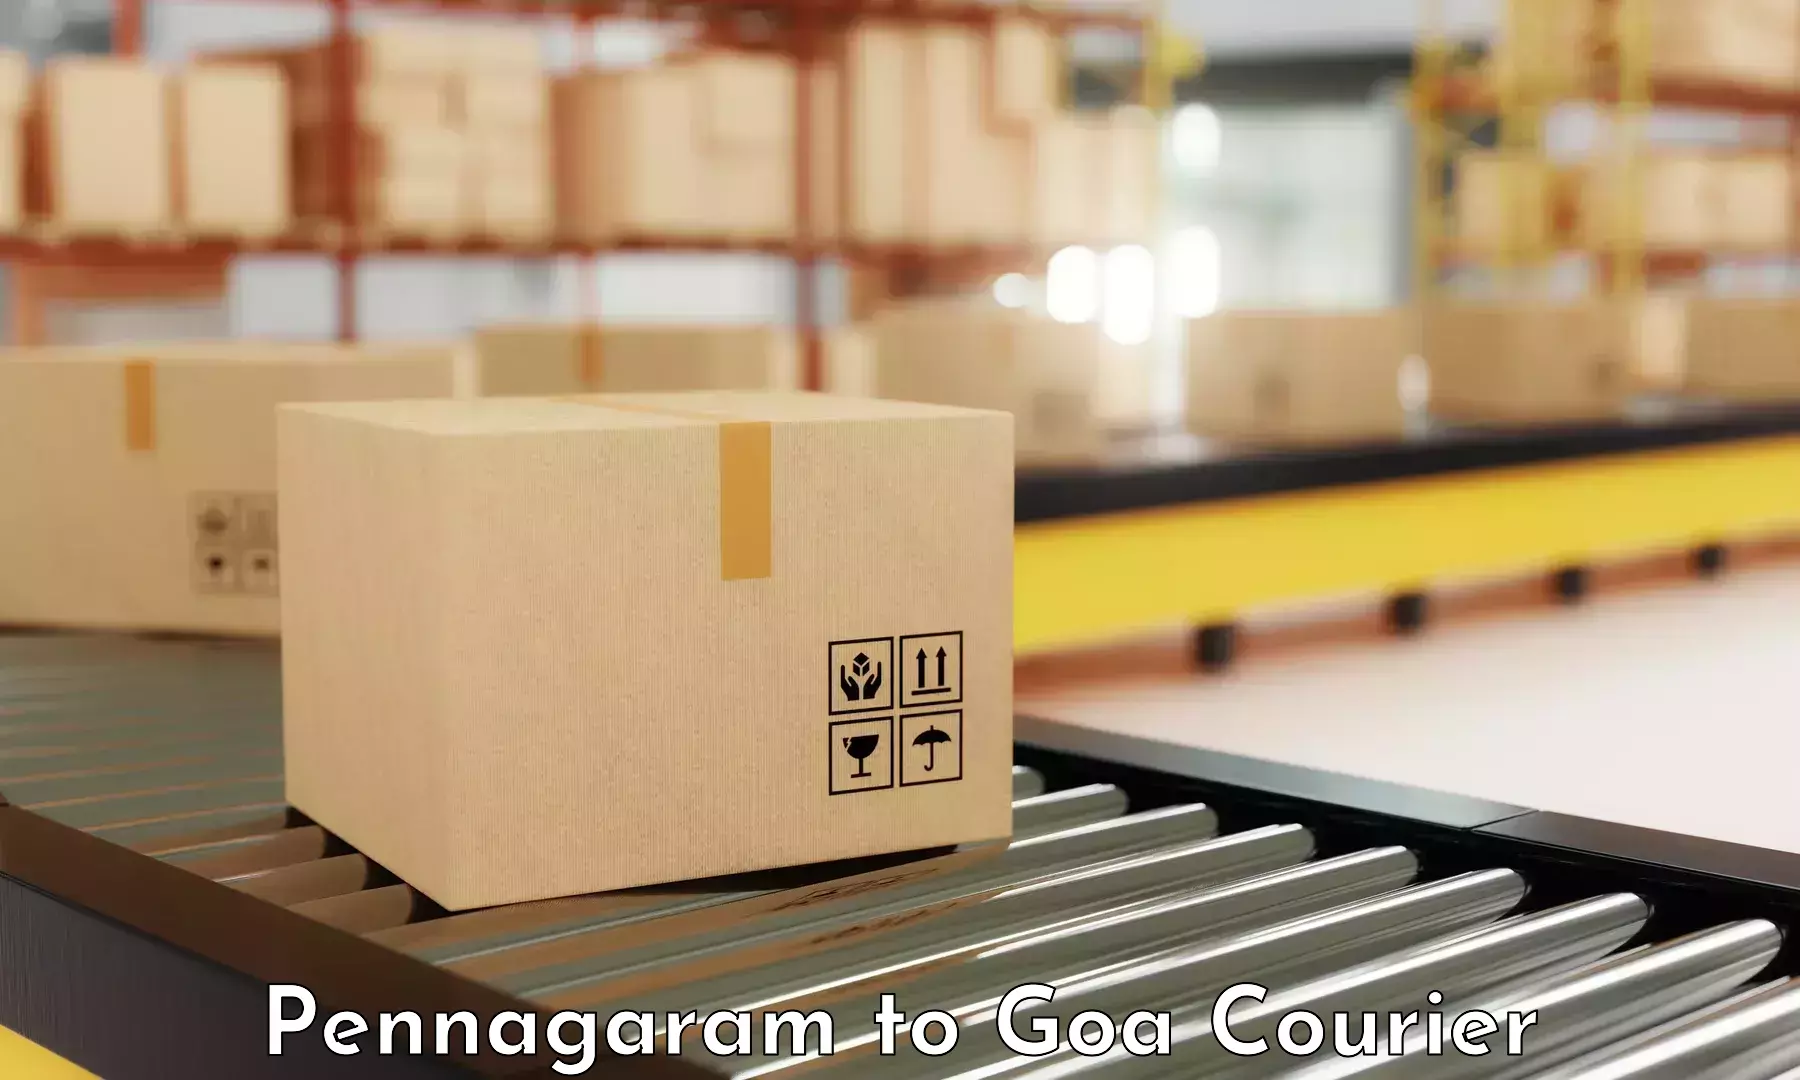 Return courier service Pennagaram to Mormugao Port